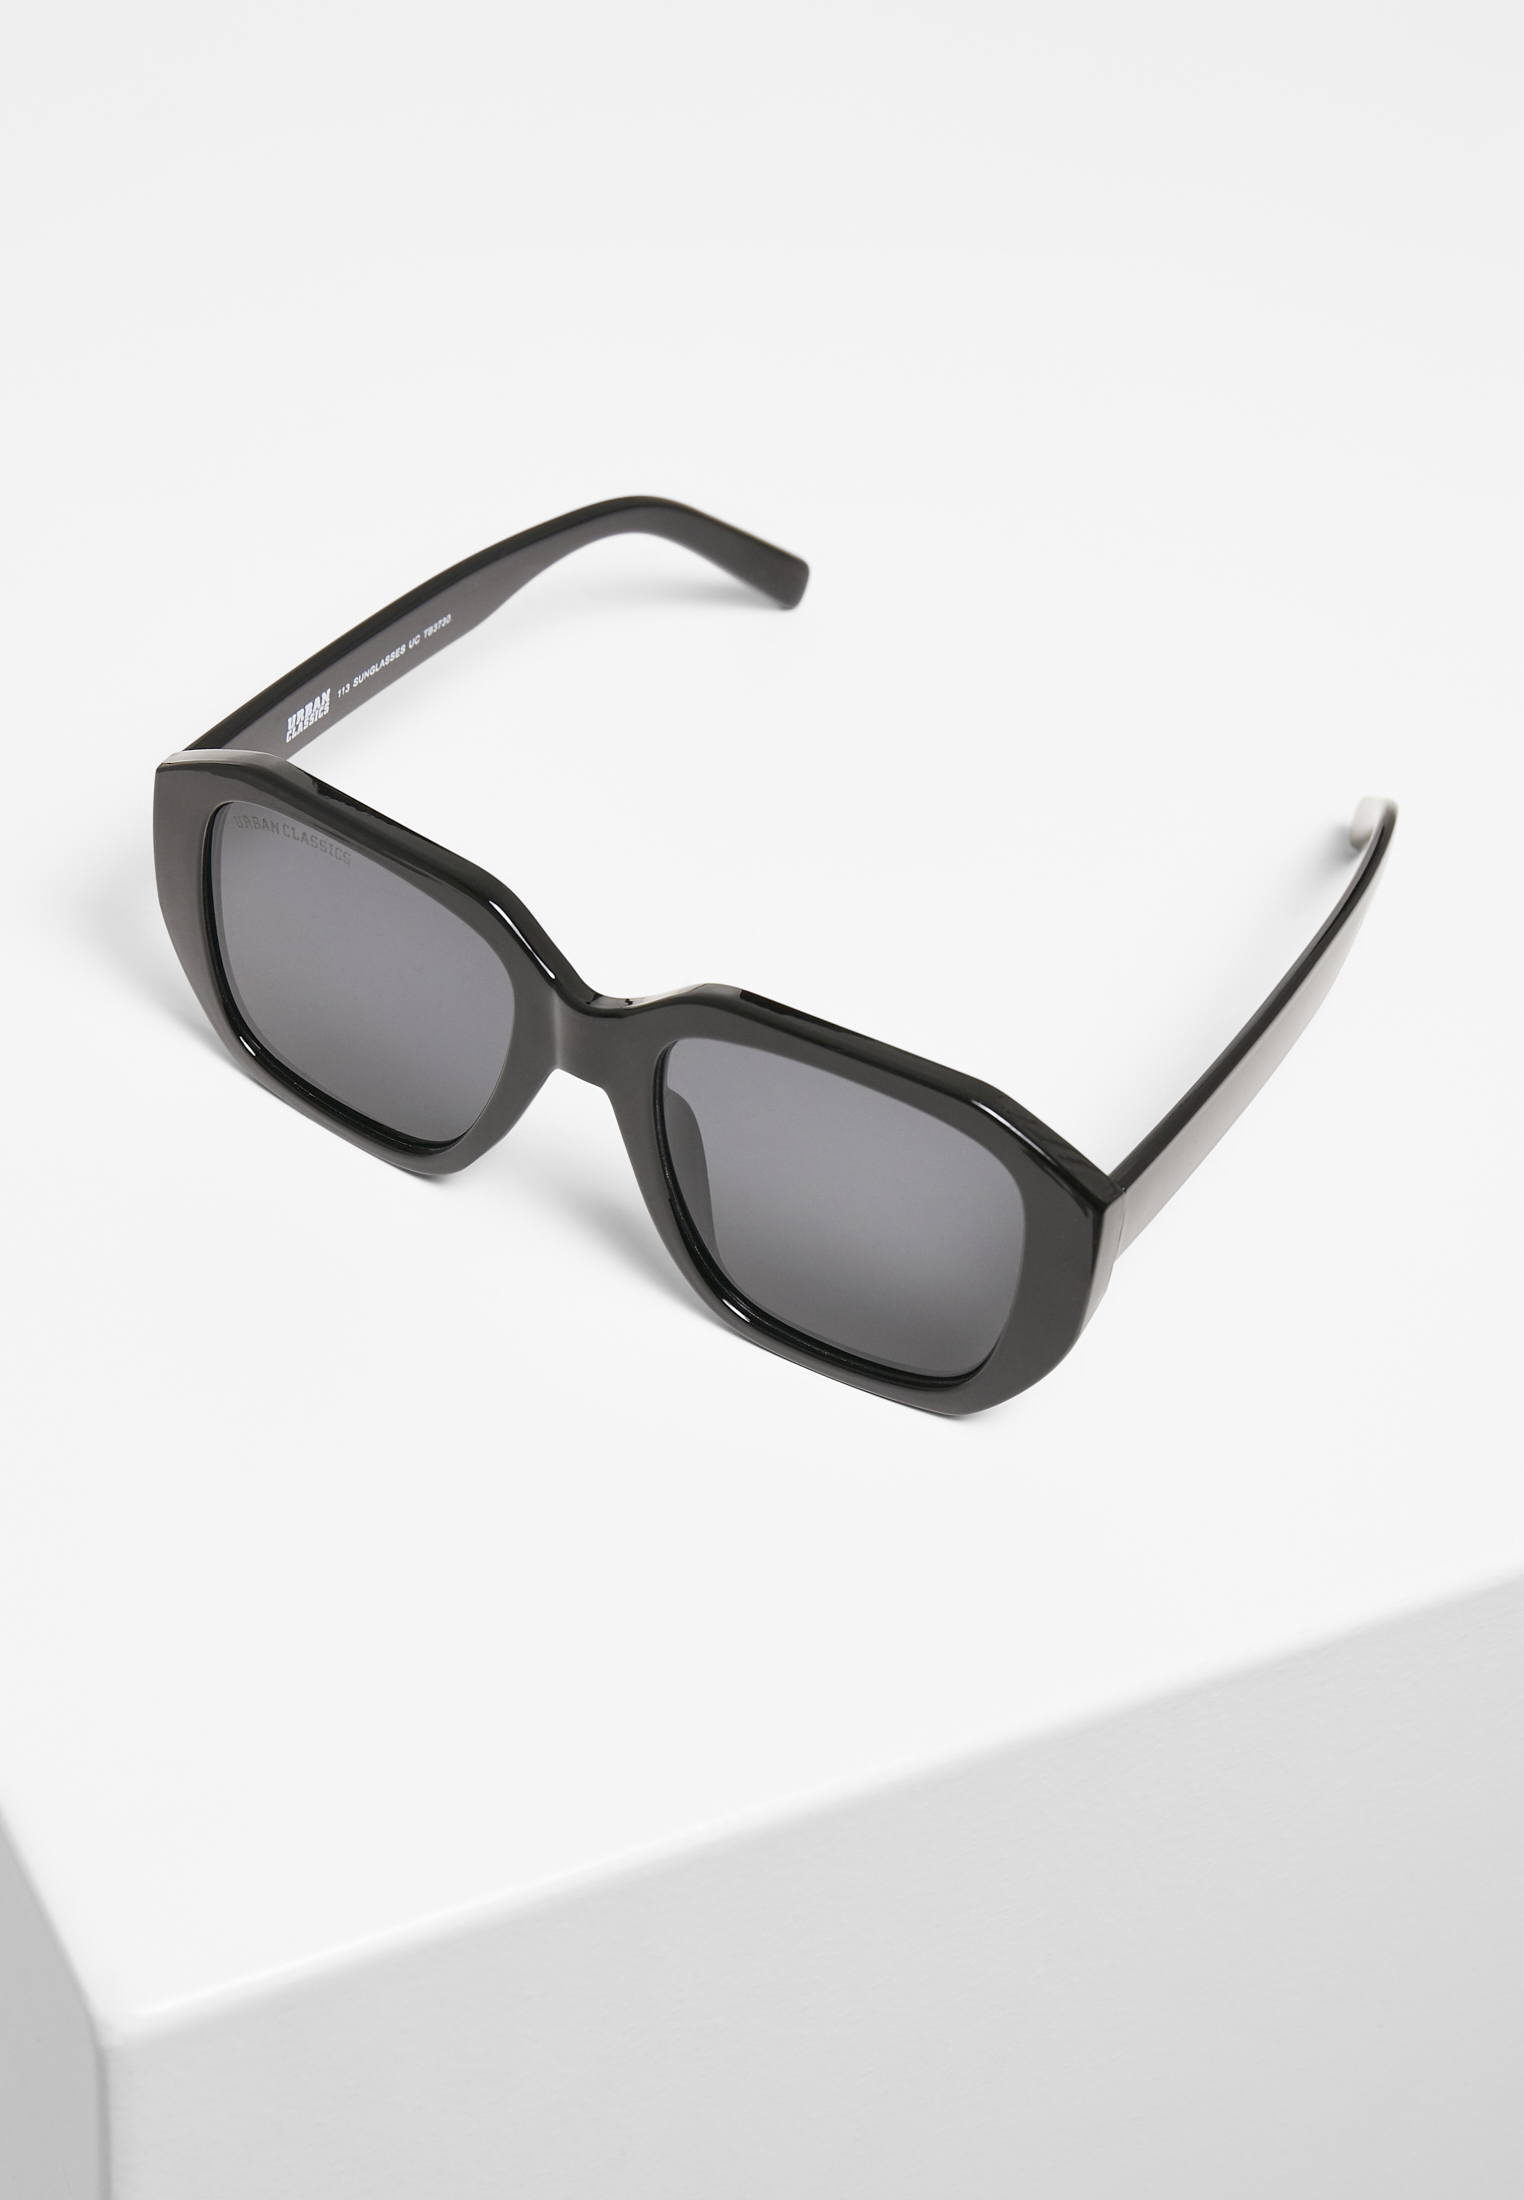 Sonnenbrillen 113 Sunglasses UC in Farbe black/black